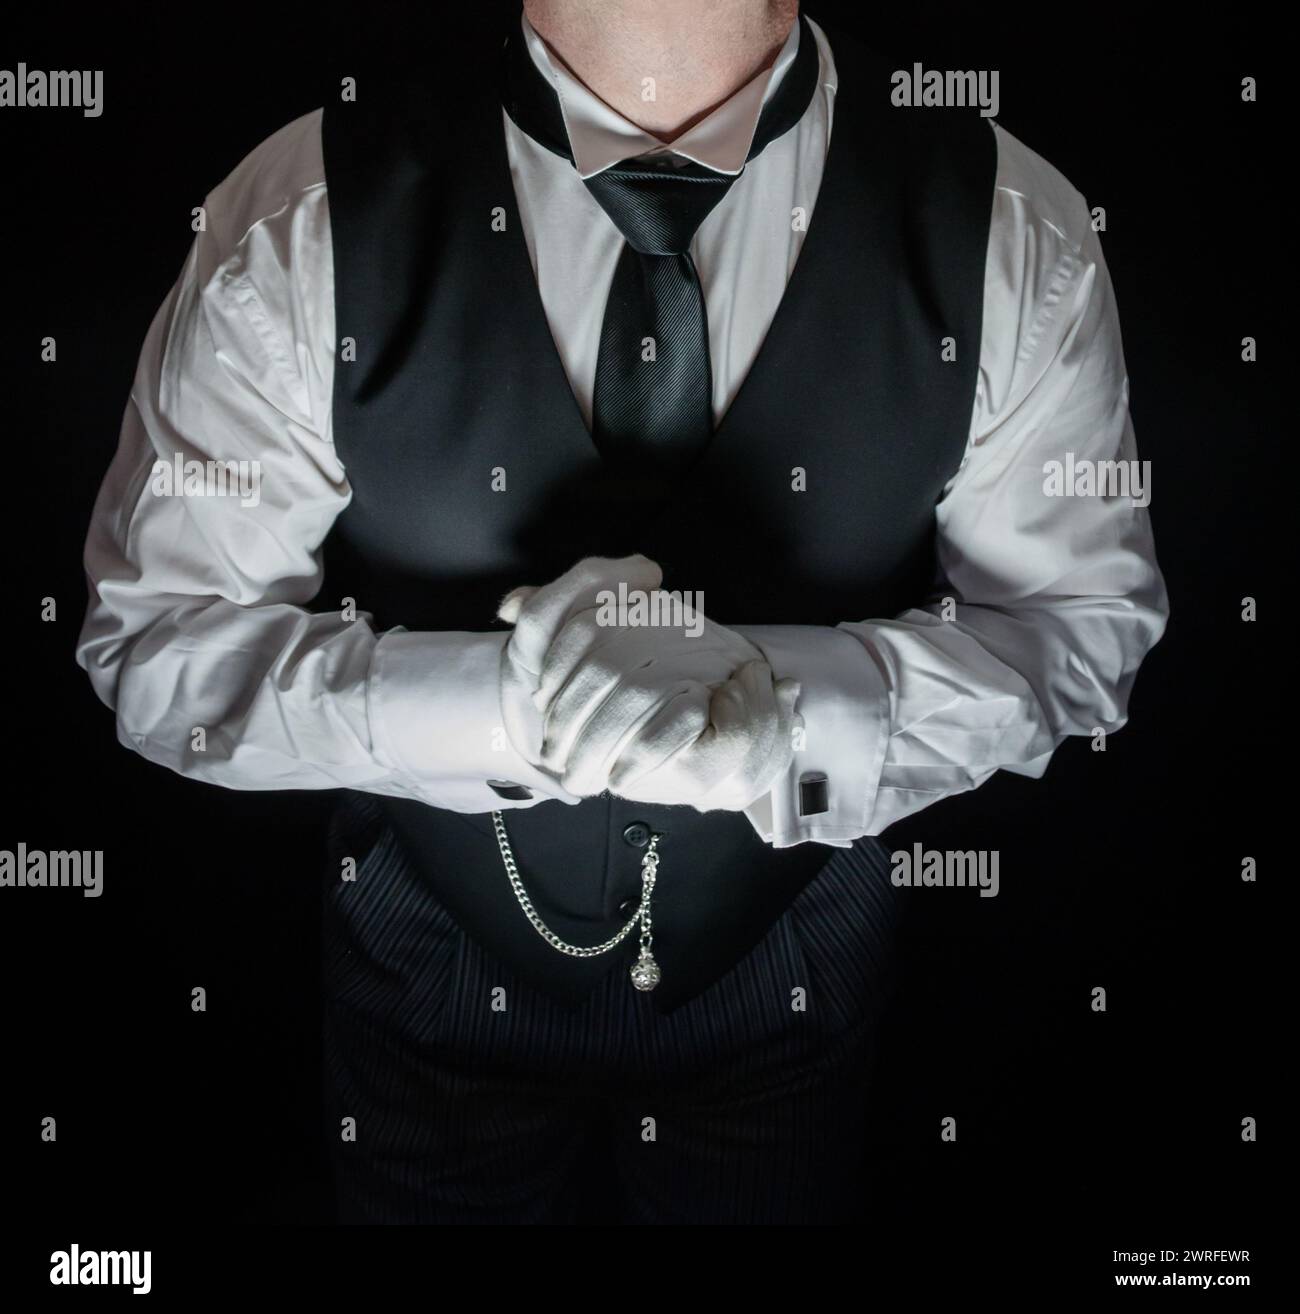 Porträt von Butler in dunklem Anzug und weißen Handschuhen, die gerne zu Diensten sein möchten. Konzept der Dienstleistungsbranche und des professionellen Gastgewerbes. Stockfoto